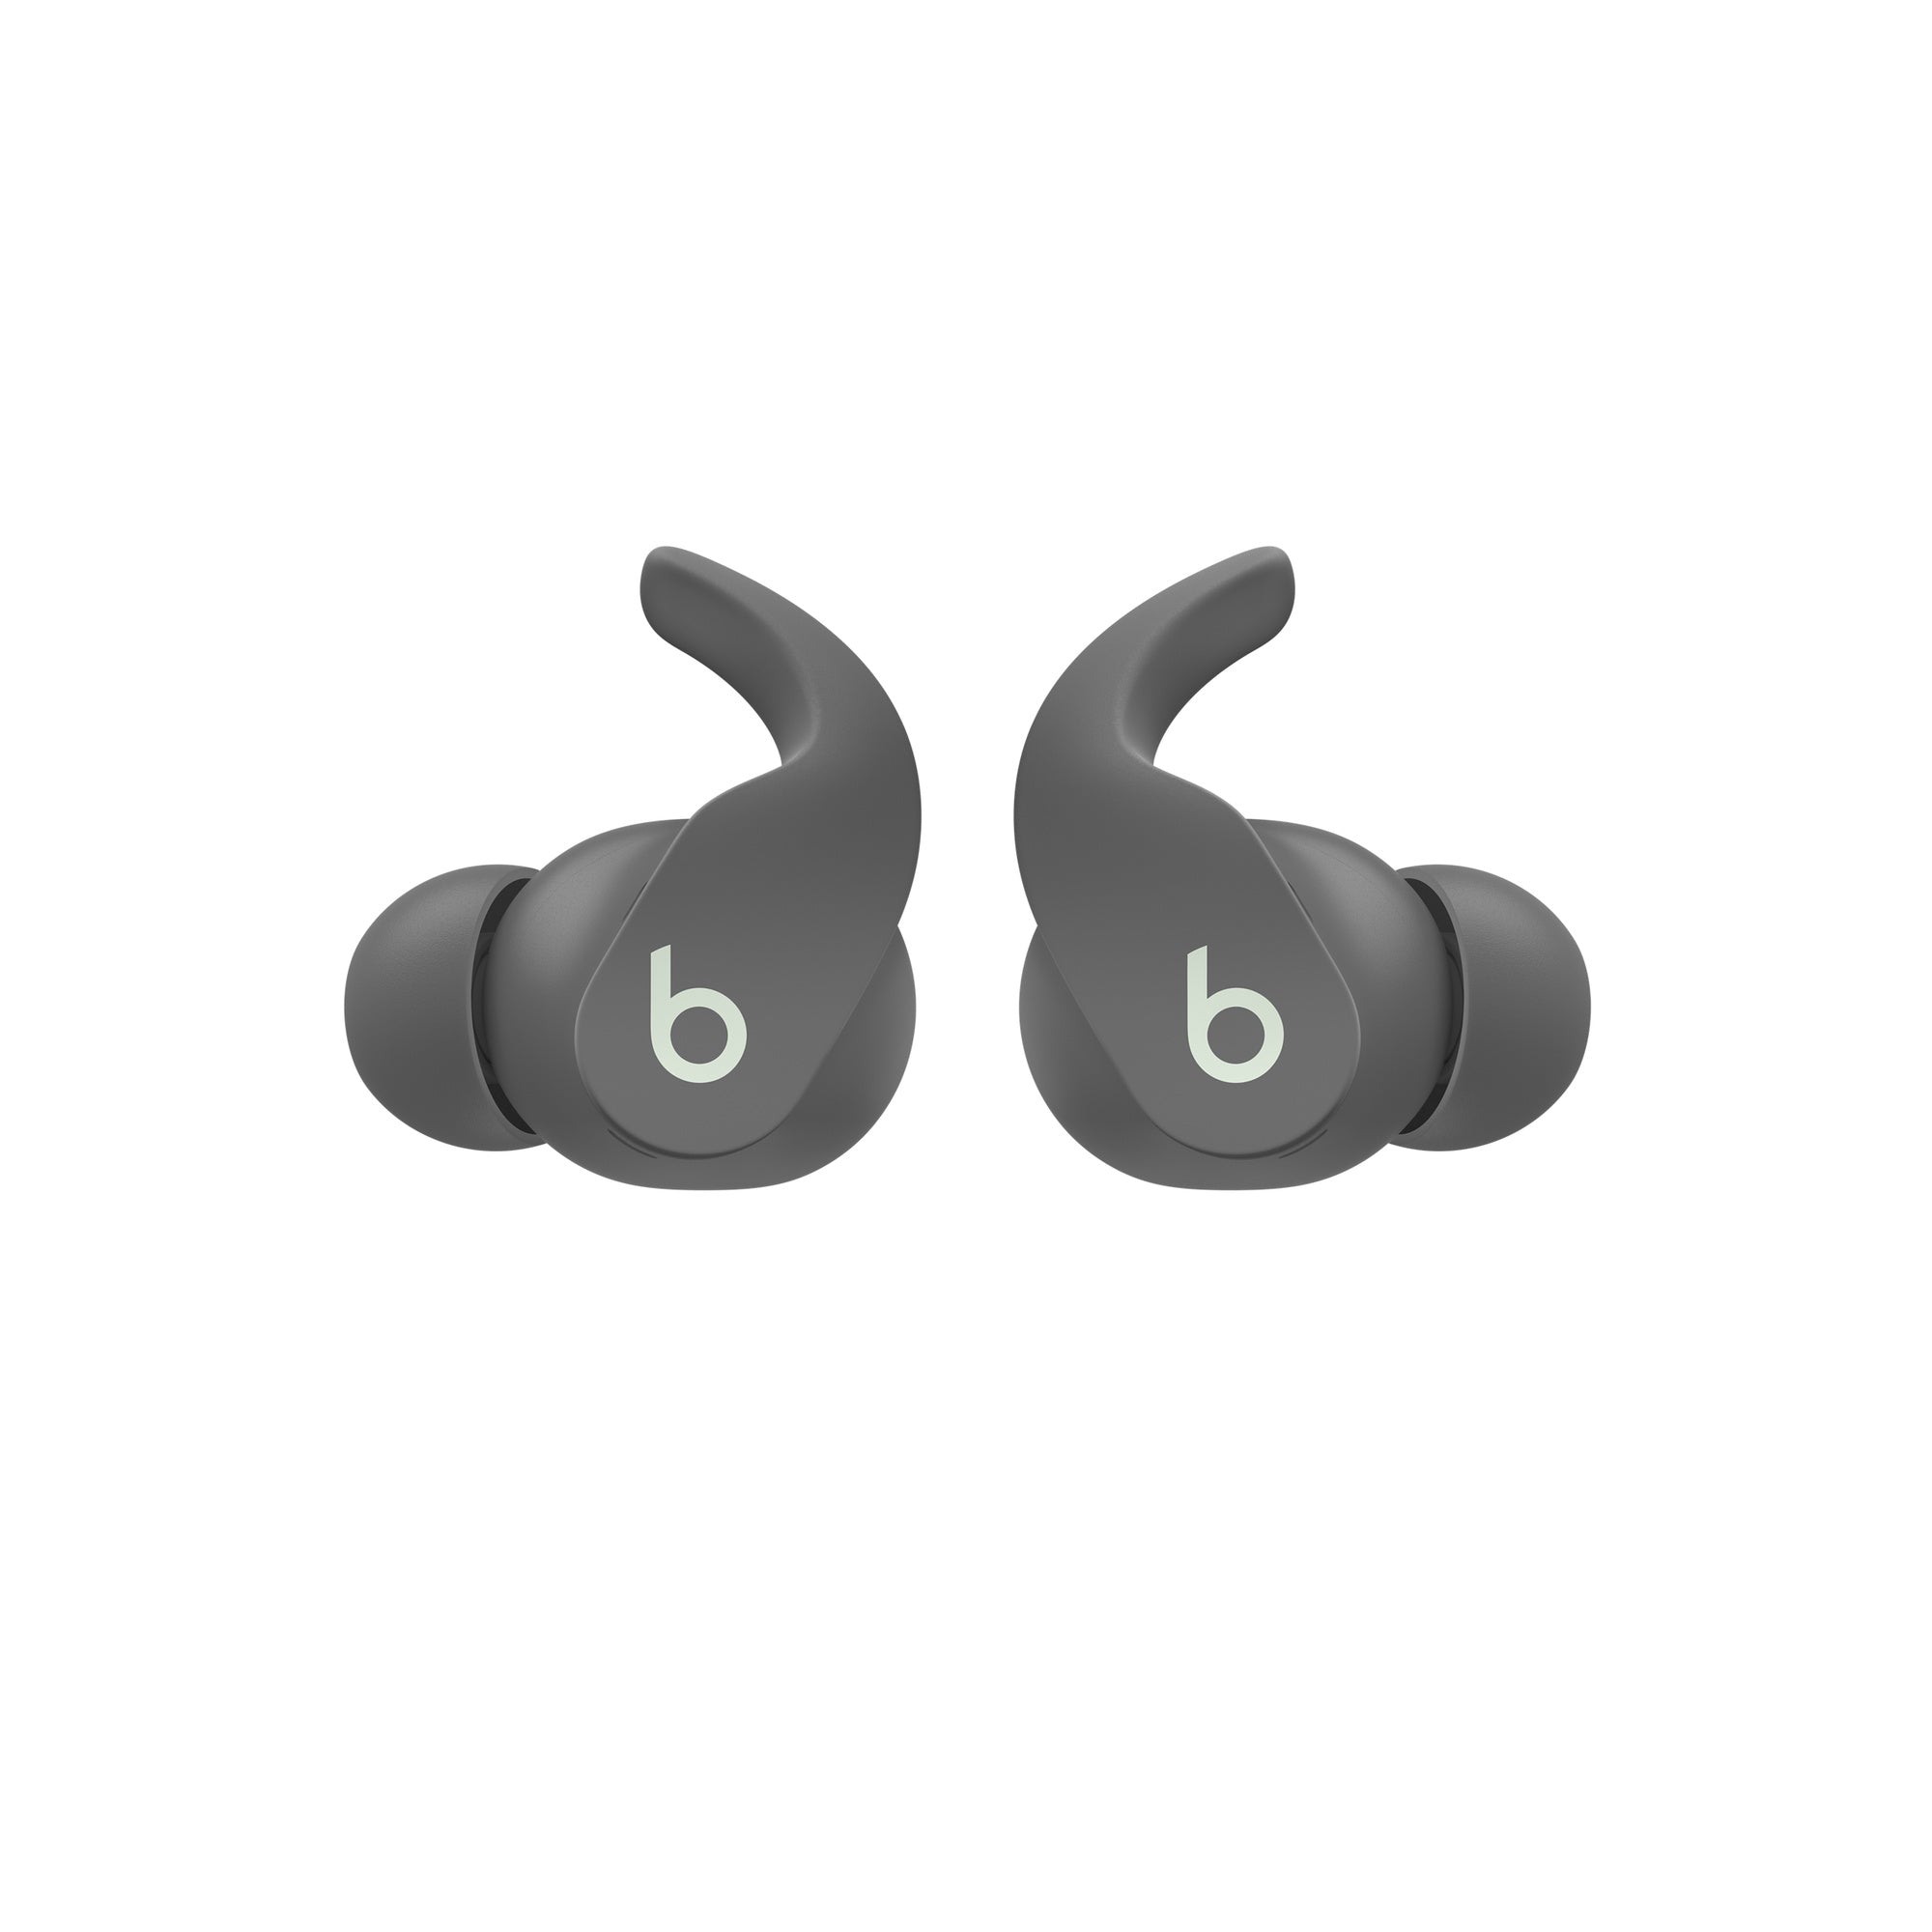 Bose Quietcomfort Earbuds II Black - iShop